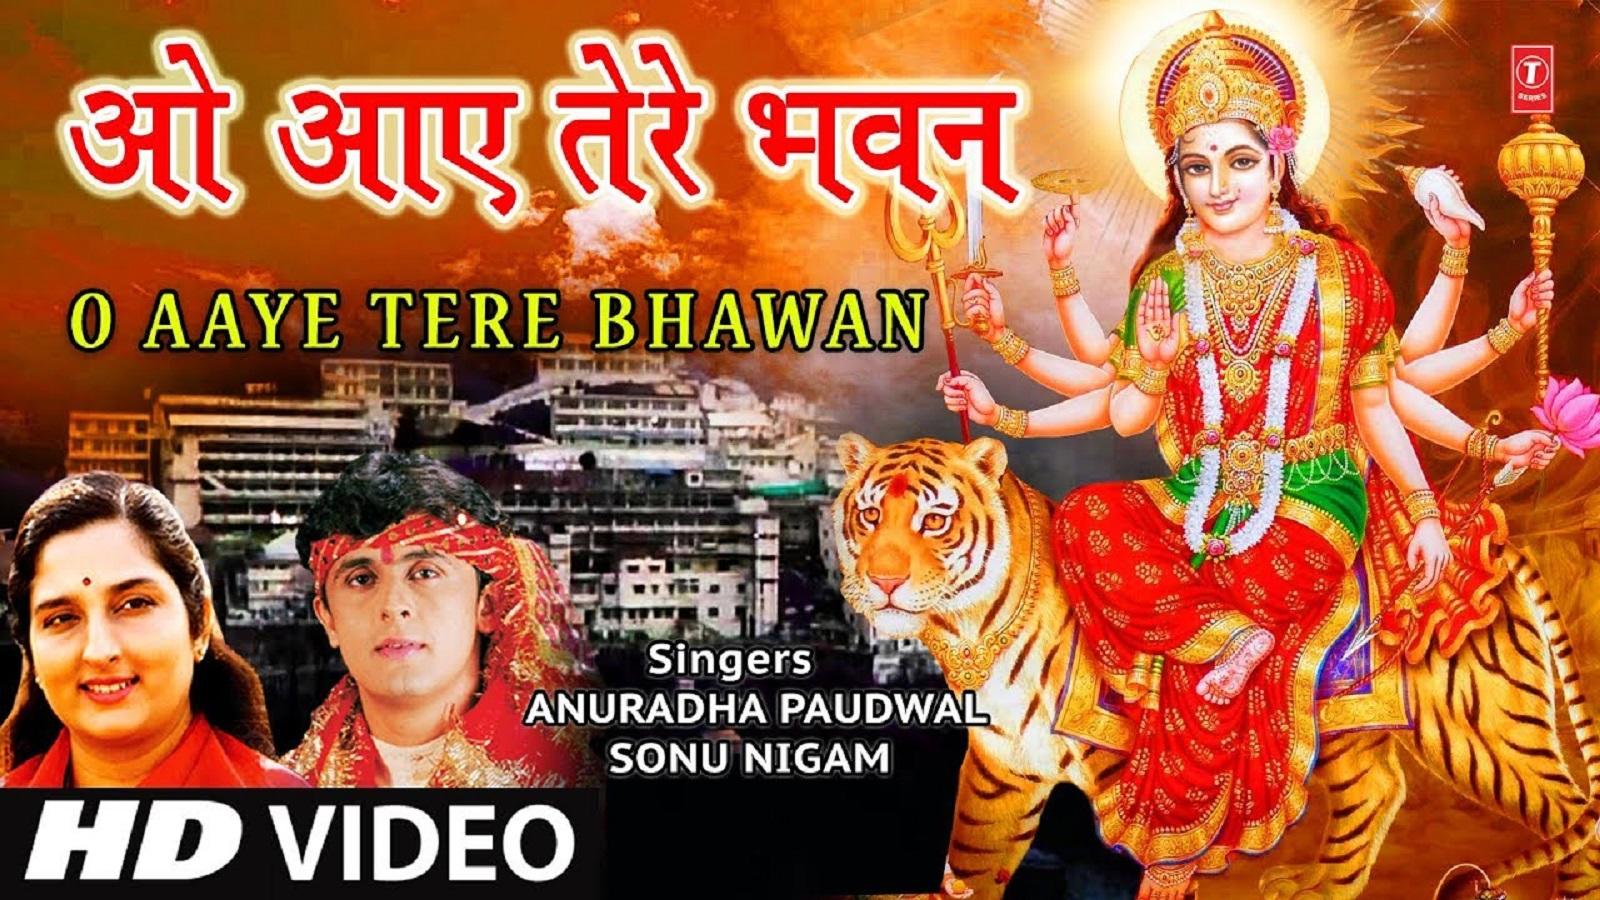 Navratri Special Hindi Gana: Latest Hindi Song 'O Aaye Tere Bhawan' sung by  Sonu Nigam and Anuradha Paudwal